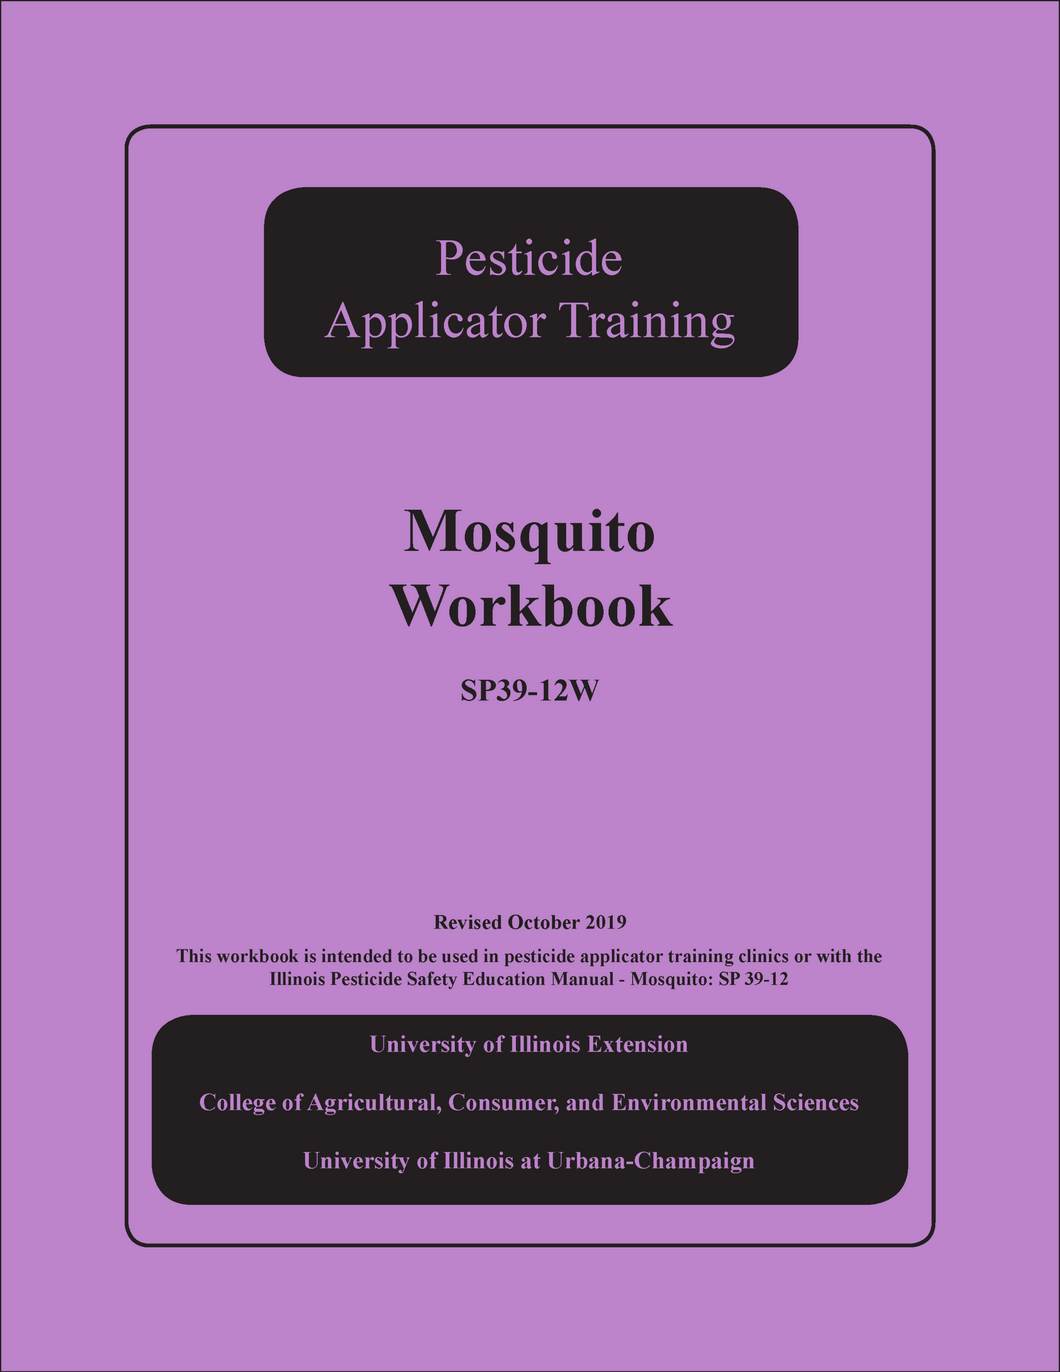 SP39-12W - Pesticide Applicator Training Manual: Mosquito